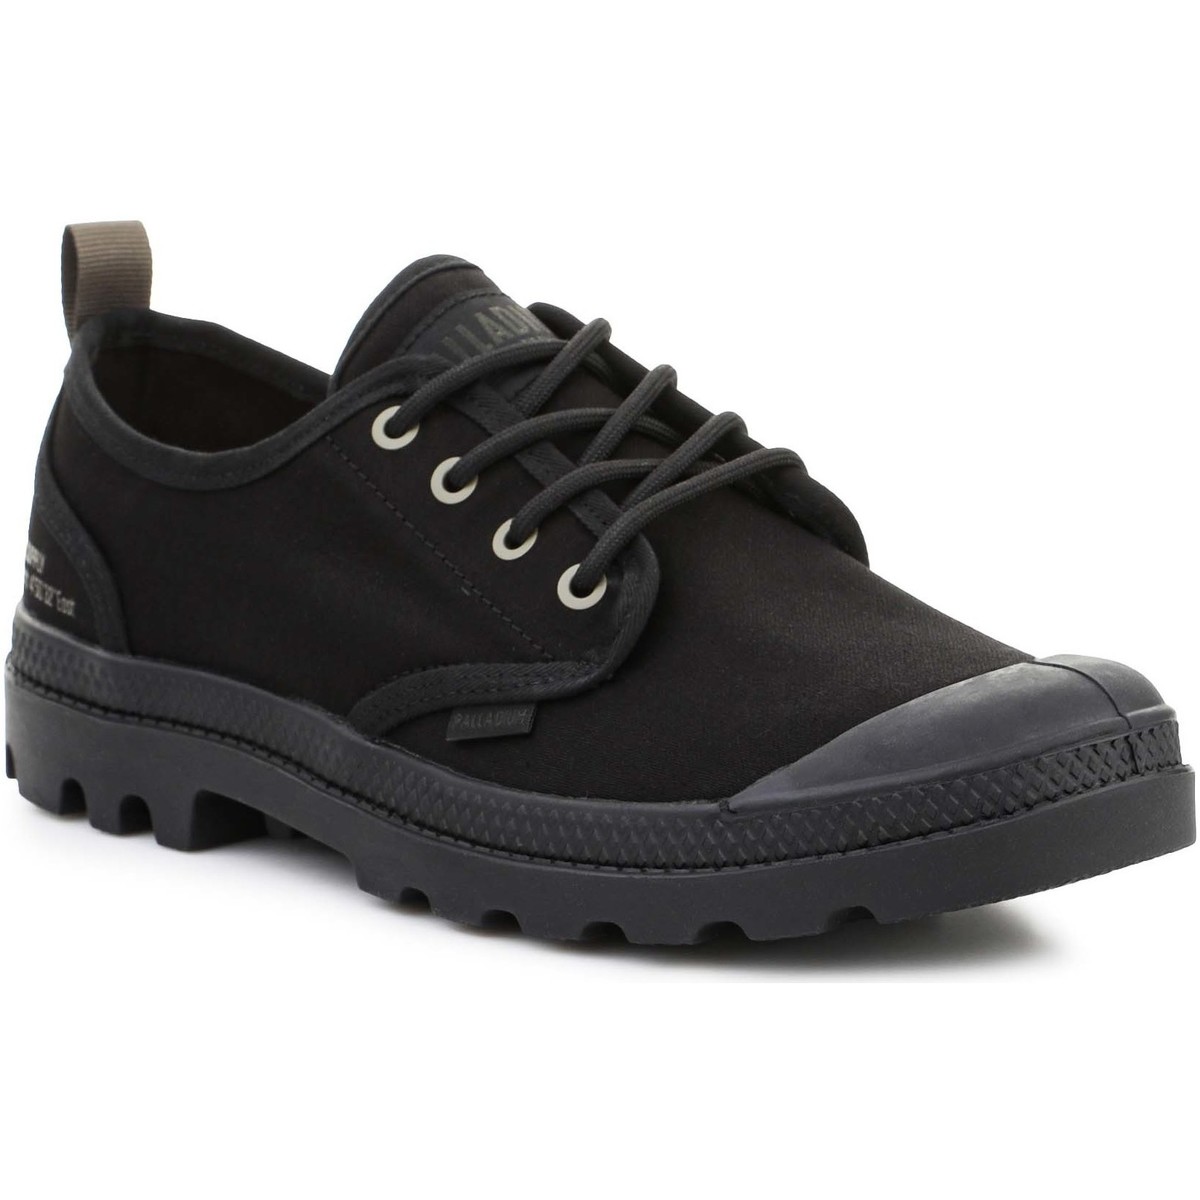 Palladium  Xαμηλά Sneakers Palladium Pampa OX HTG SUPPLY BLACK/BLACK 77358-001-M